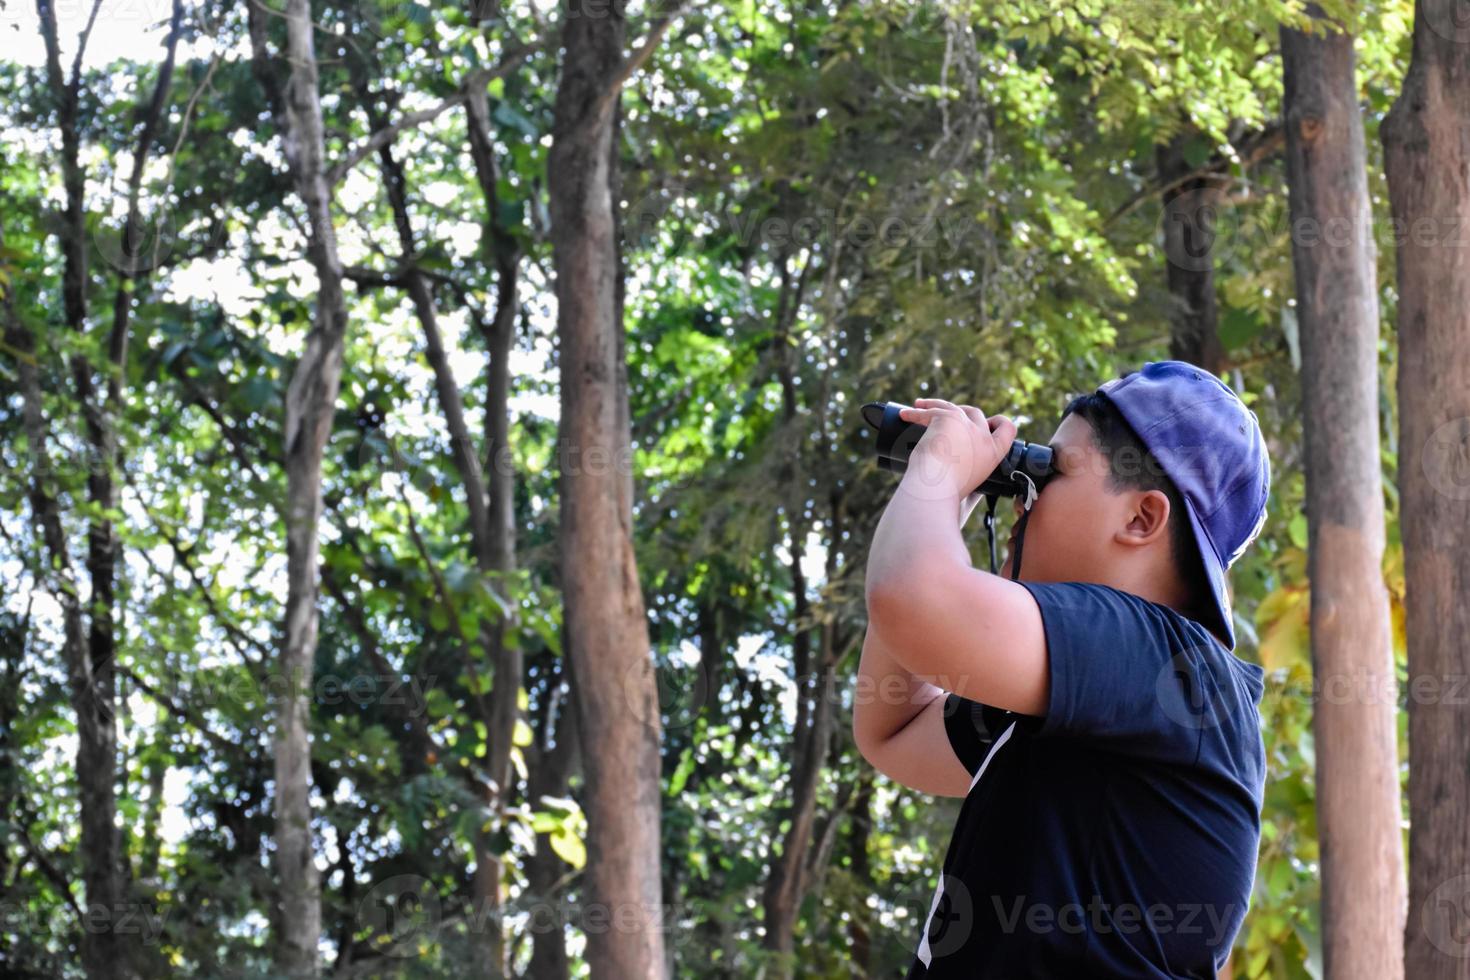 portrait de garçons asiatiques utilisant des jumelles pour observer les oiseaux dans la forêt tropicale avec ses amis, idée pour apprendre les créatures et les animaux sauvages en dehors de la salle de classe, mise au point douce. photo